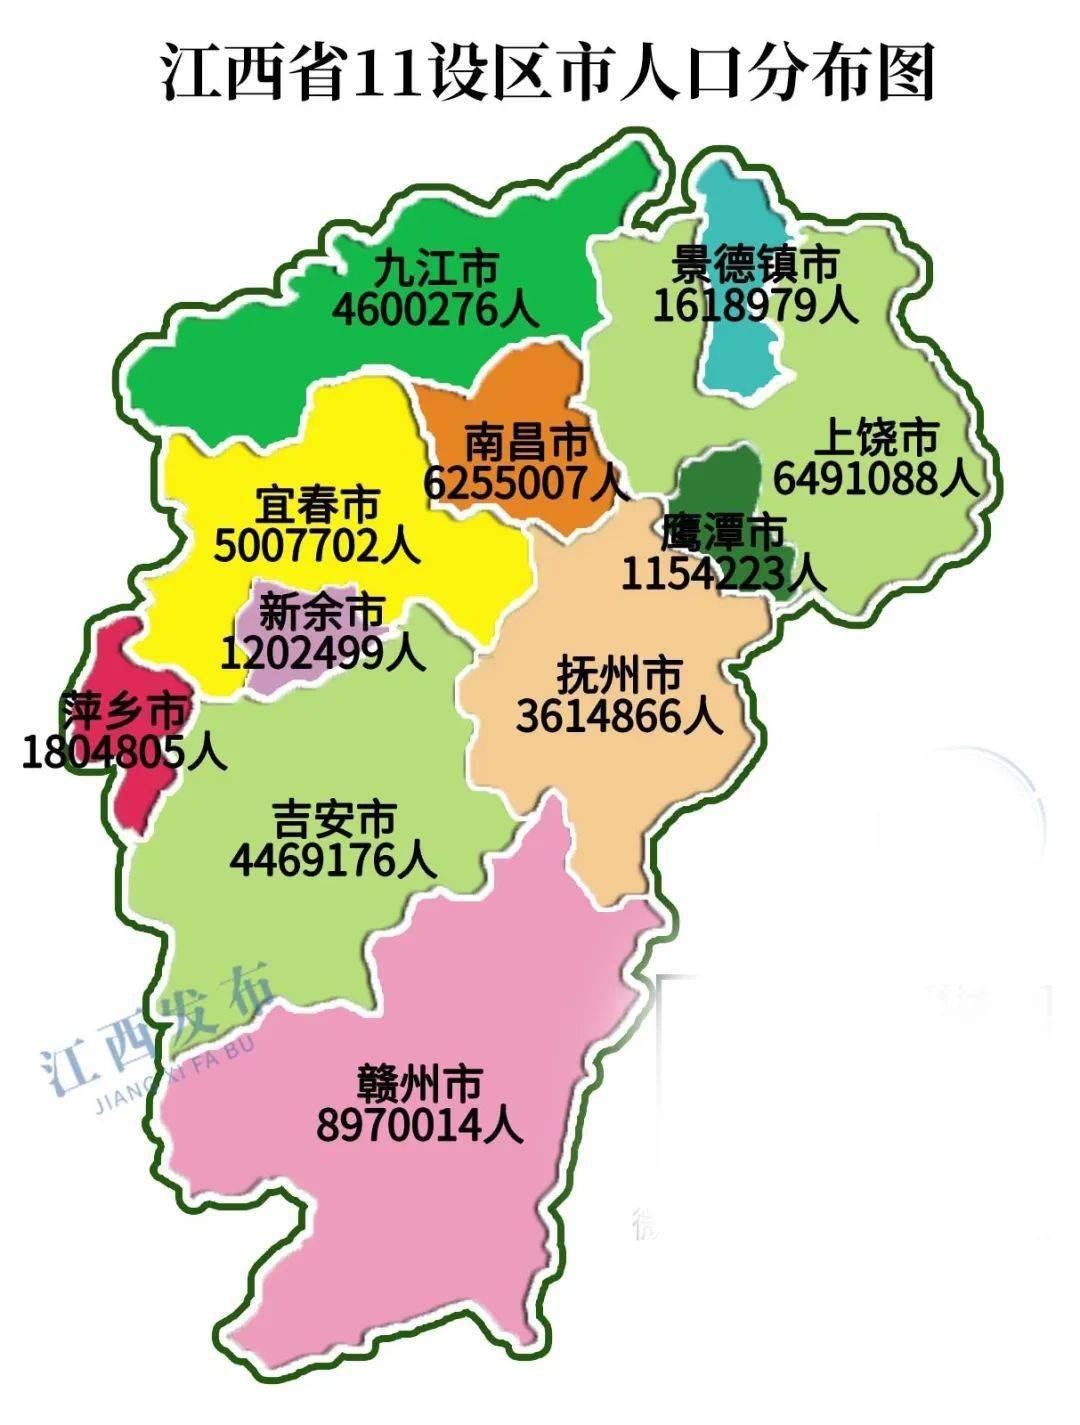 《第七次全国人口普查公报(第三号) ——地区人口情况》显示 根据赣州